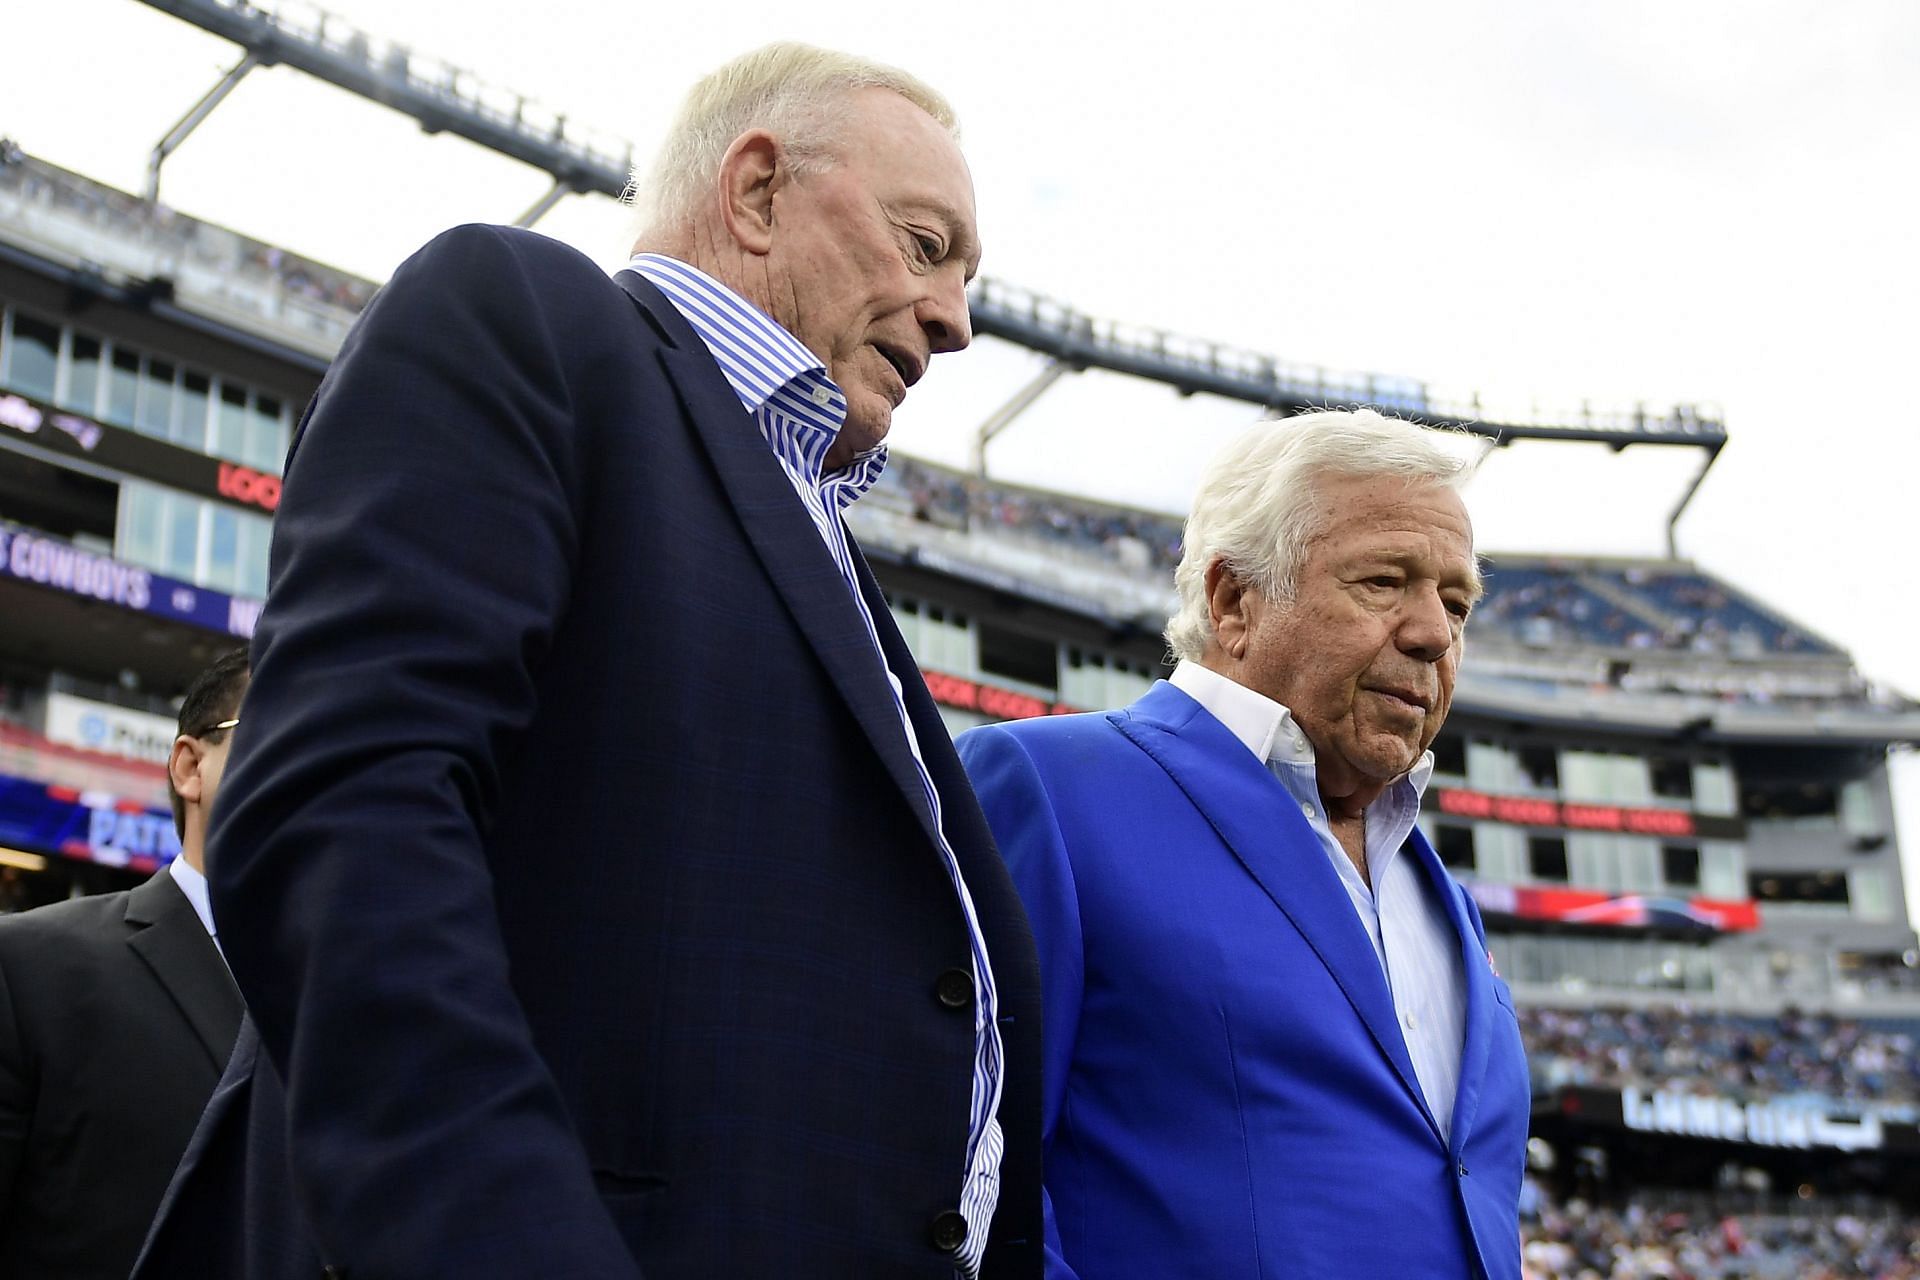 NFL owners Jerry Jones and Robert Kraft